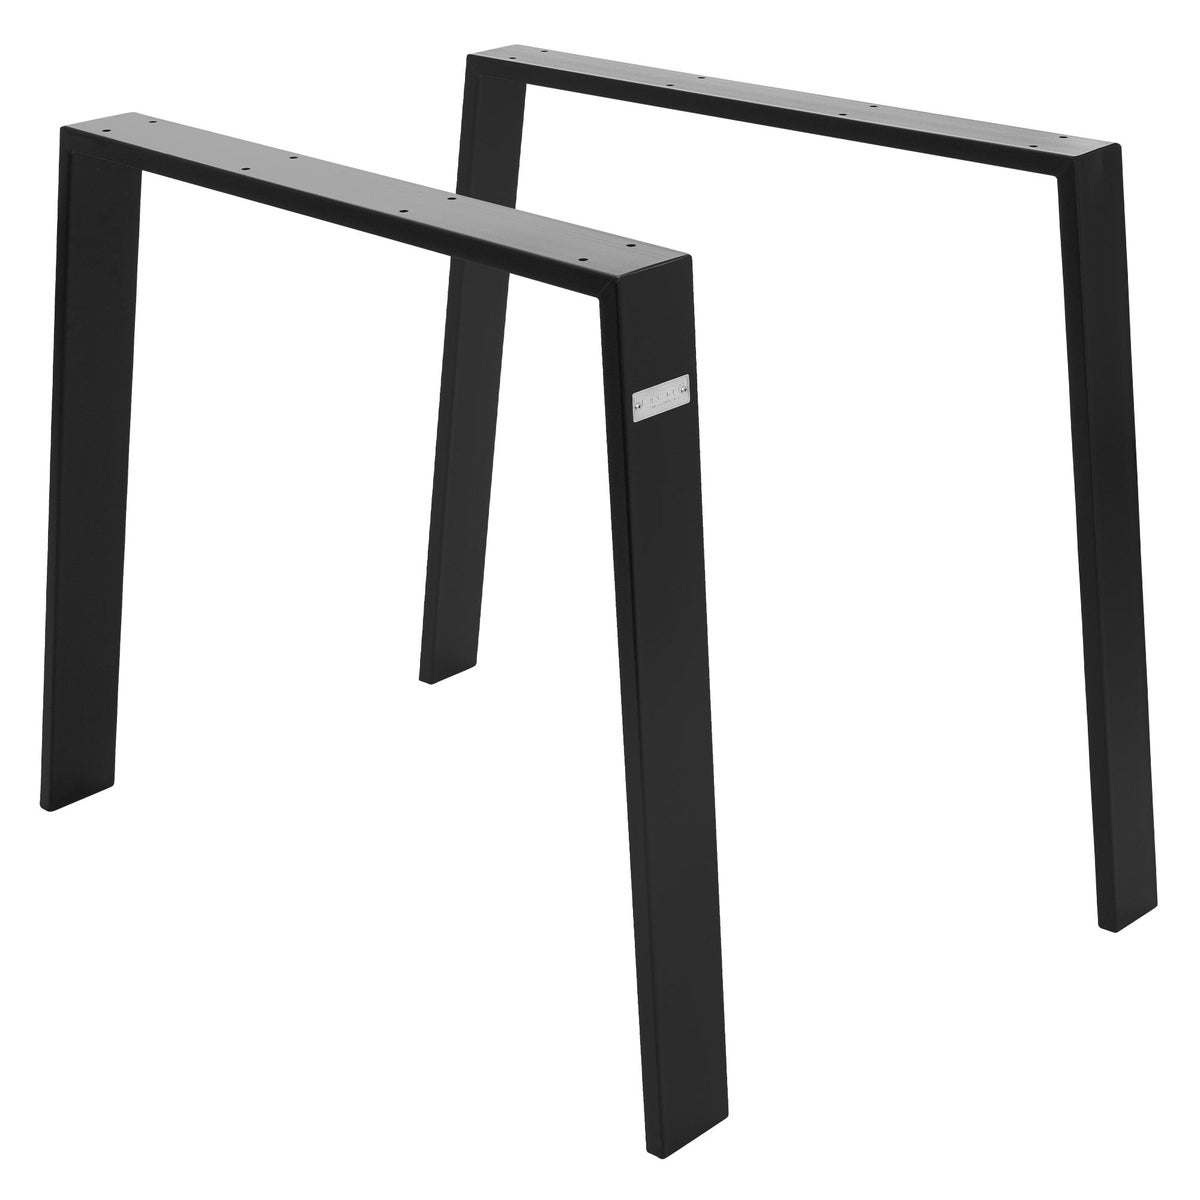 ML-Design 2er Set Tischbeine Loft 90x72 cm, Schwarz, Profil 8x2 cm, aus Stahl, Industriedesign, U-Form, Metall Tischgestell scandic, Tischkufen Tischuntergestell Möbelfüße, für Esstisch/Schreibtisch